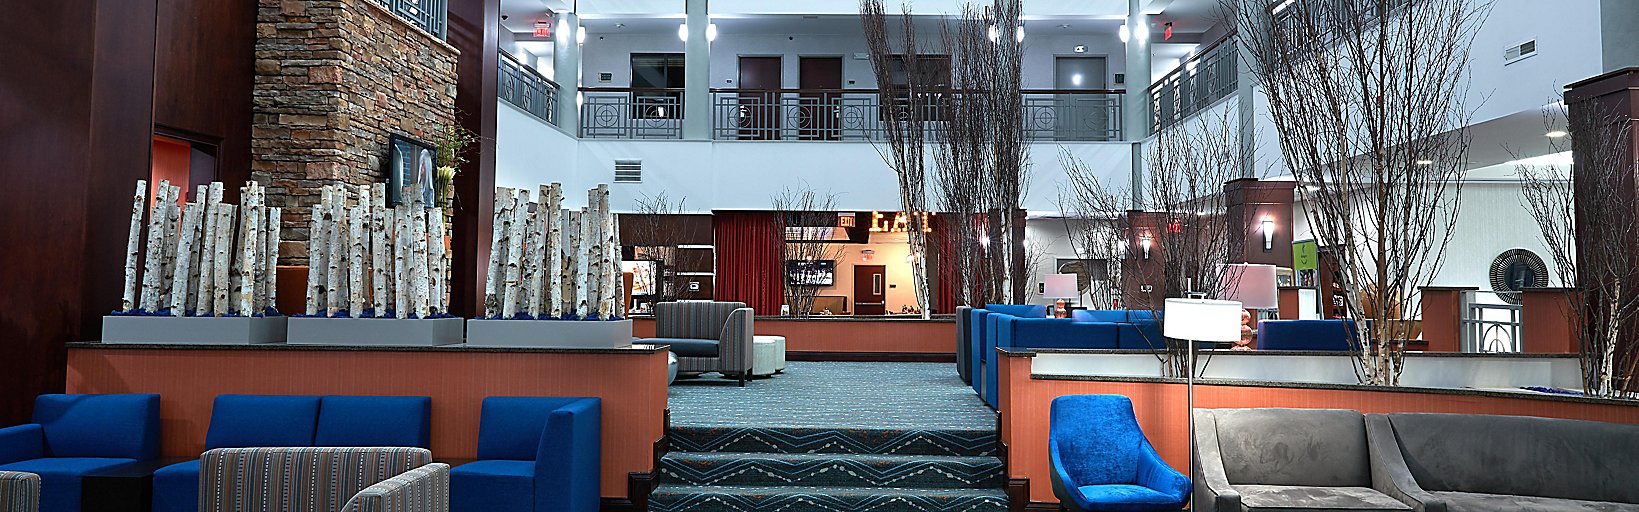 Hotels In Stockbridge Ga With Indoor Pools Holiday Inn